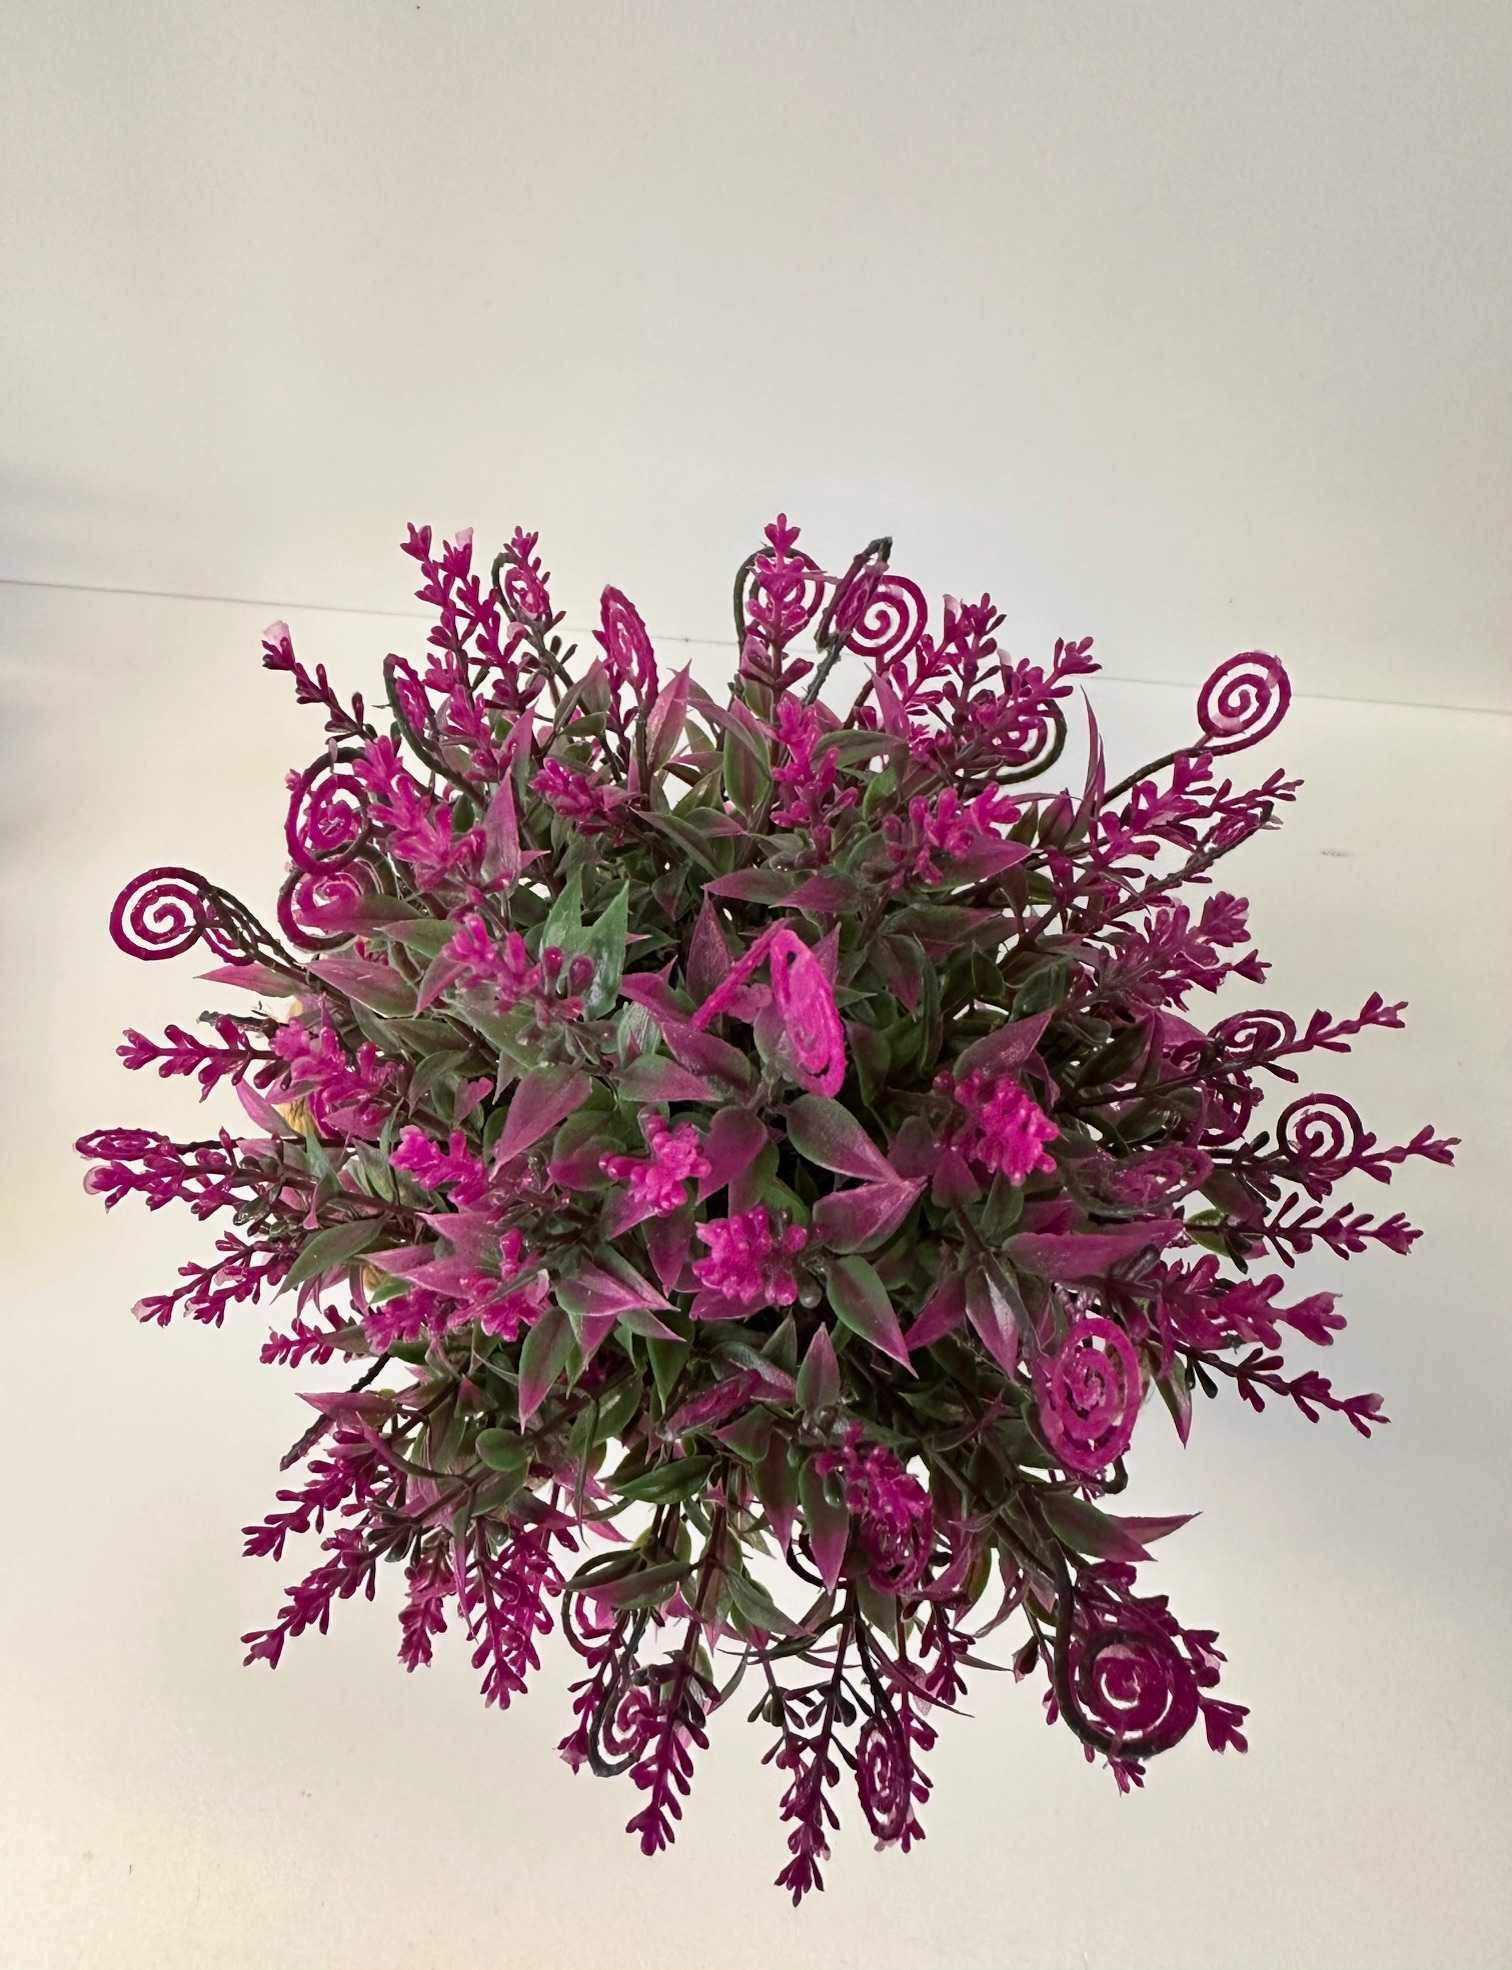 Sztuczny kwiatek w metalowej doniczce, 12 x 18 cm, nowy